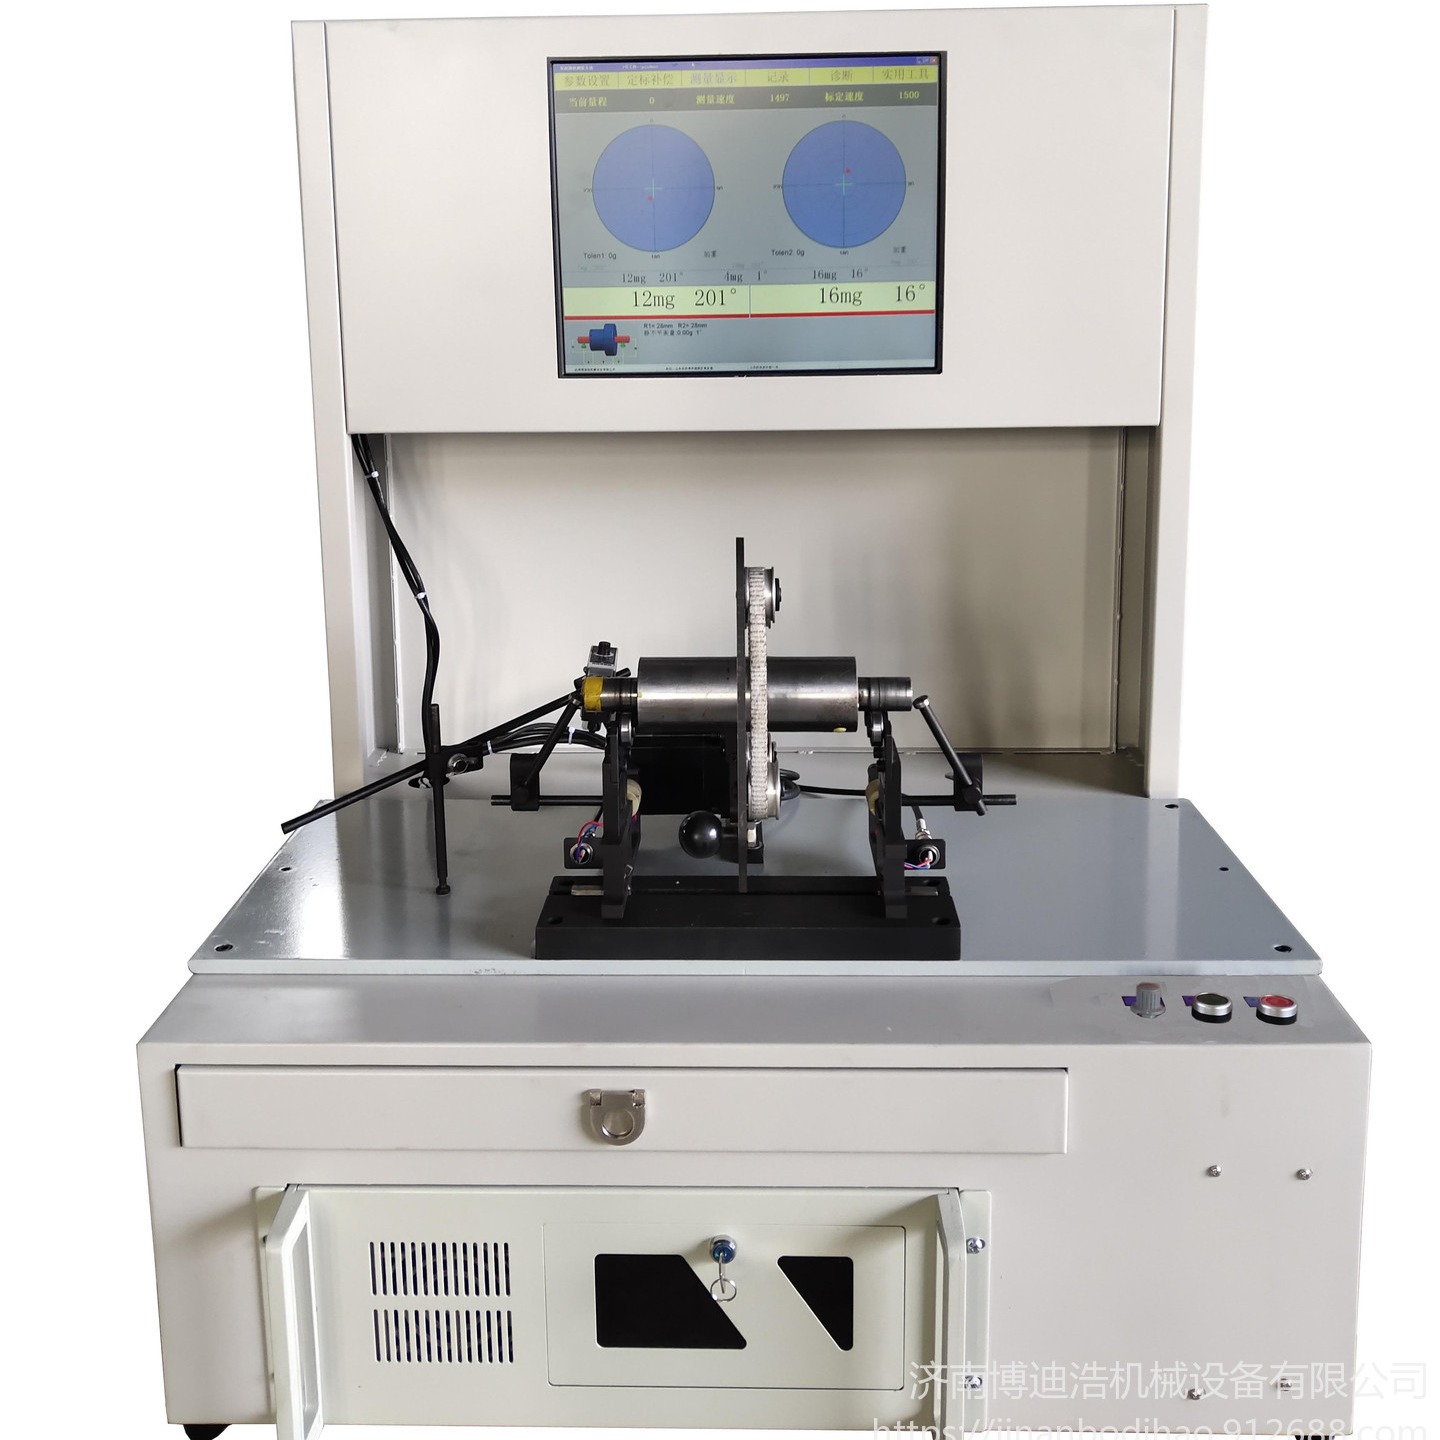 湖北二手平衡机更换测量系统平衡机测量系统升级改造 博迪浩供应全自动平衡机测量系统GB-2000